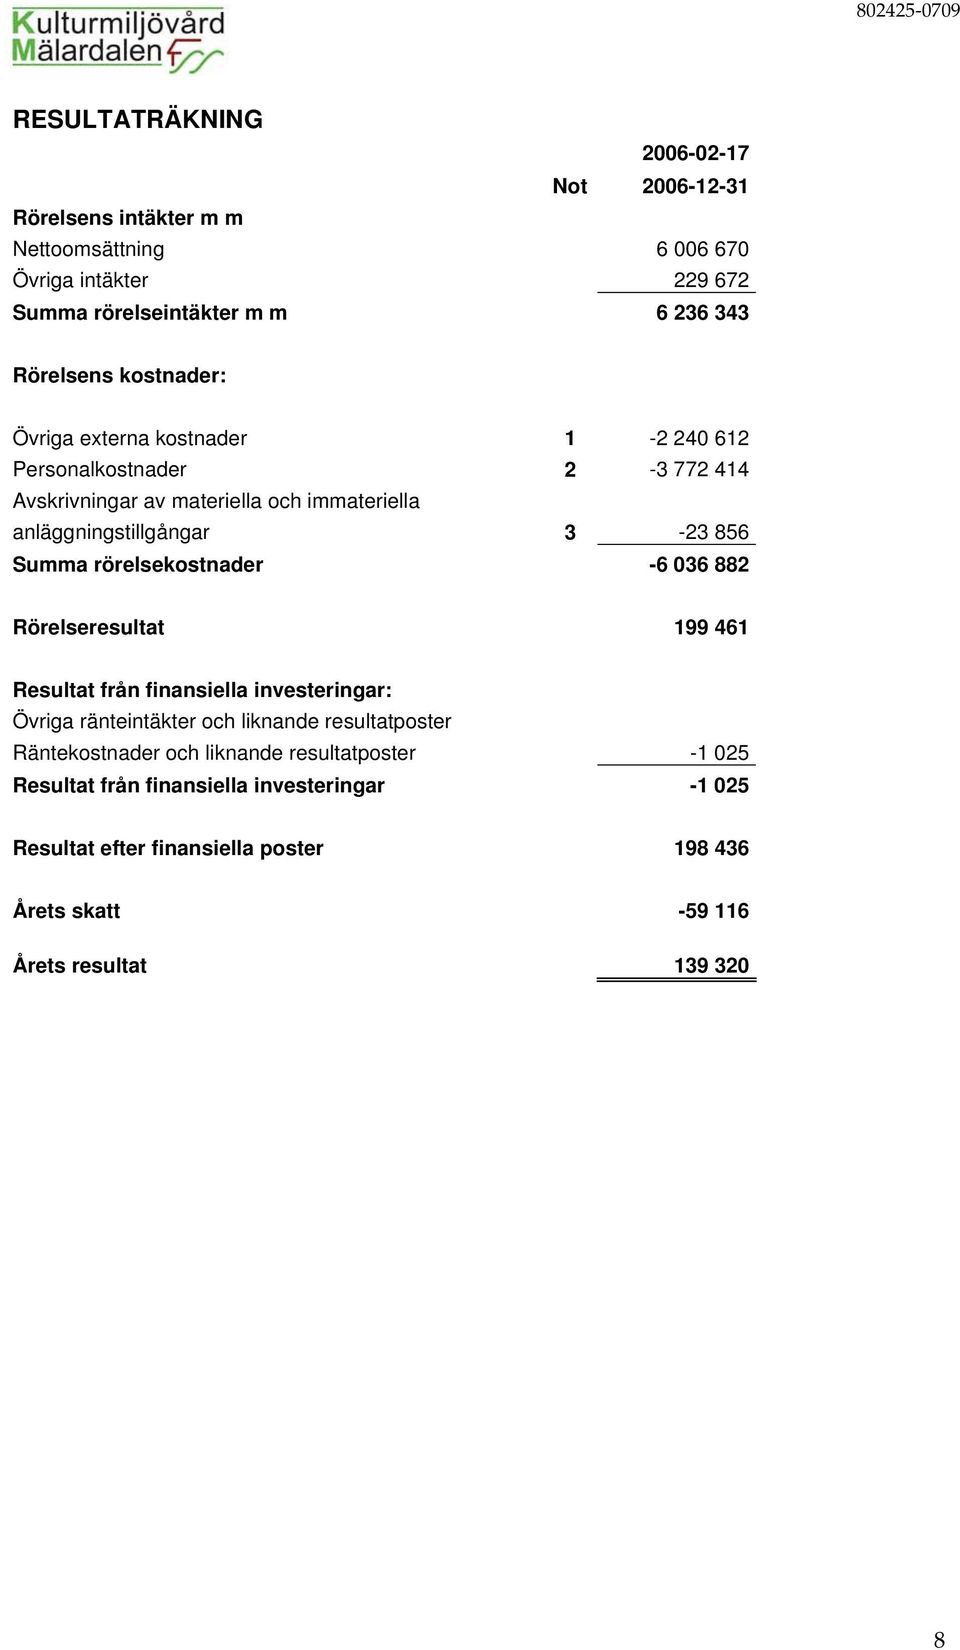 Summa rörelsekostnader -6 036 882 Rörelseresultat 199 461 Resultat från finansiella investeringar: Övriga ränteintäkter och liknande resultatposter Räntekostnader